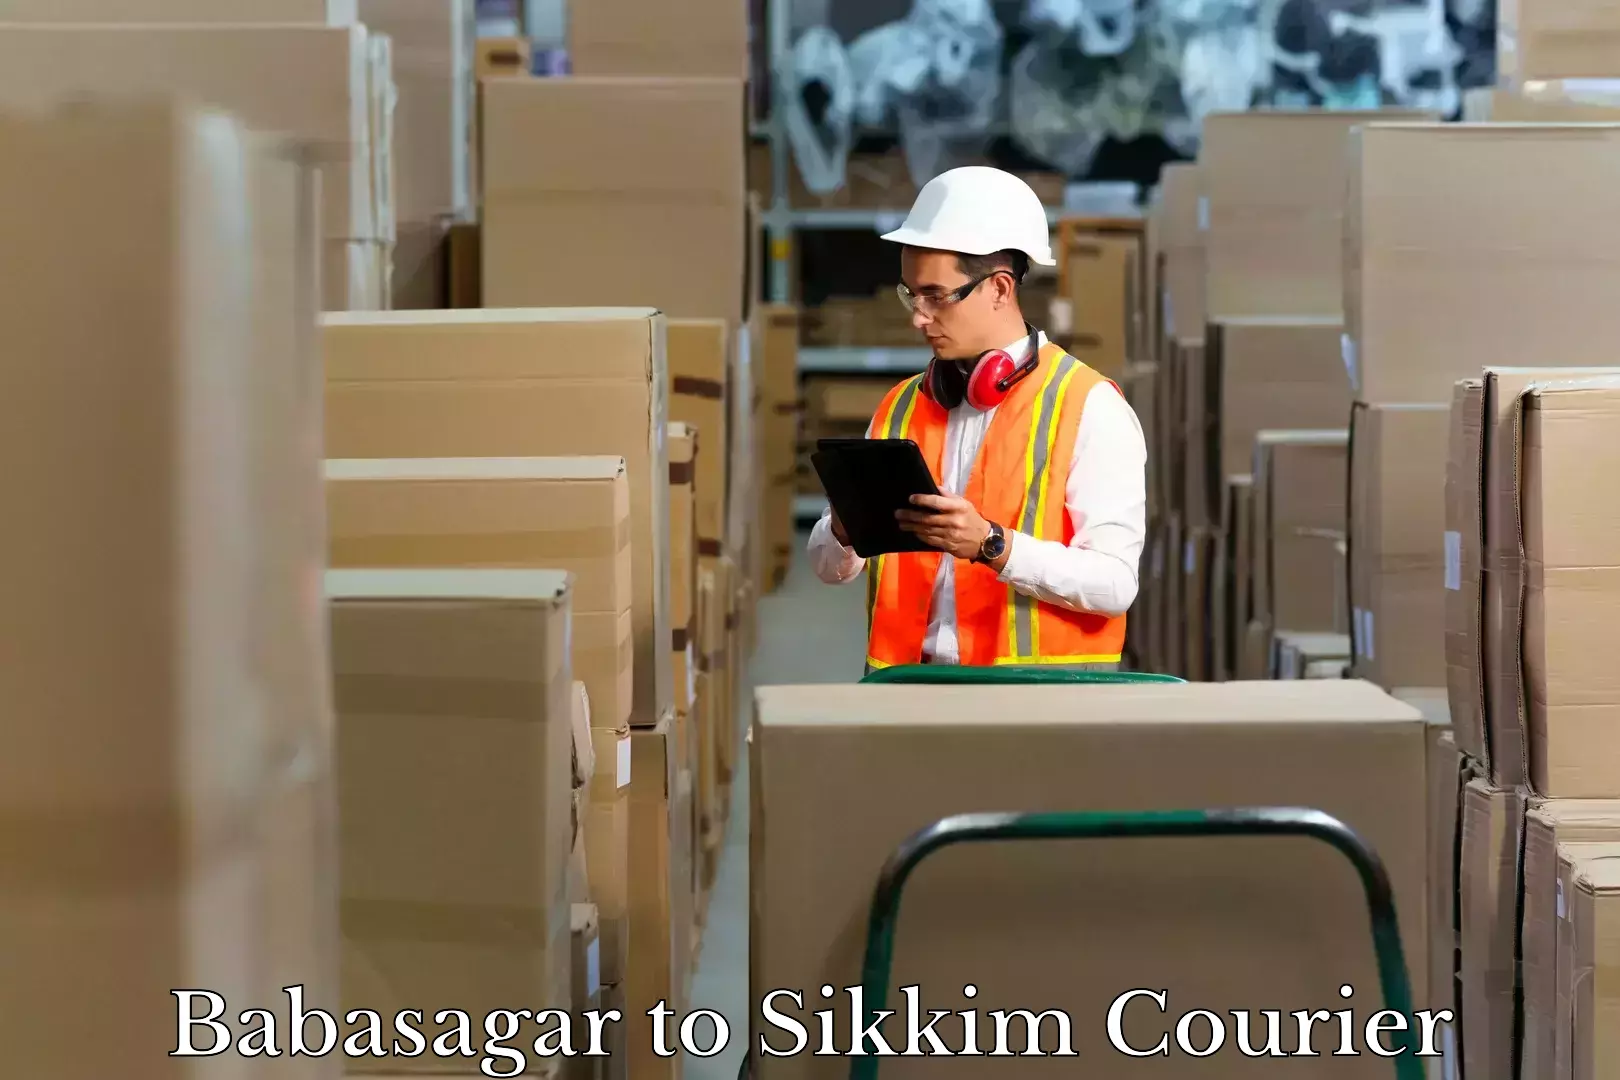 Baggage transport network Babasagar to Sikkim